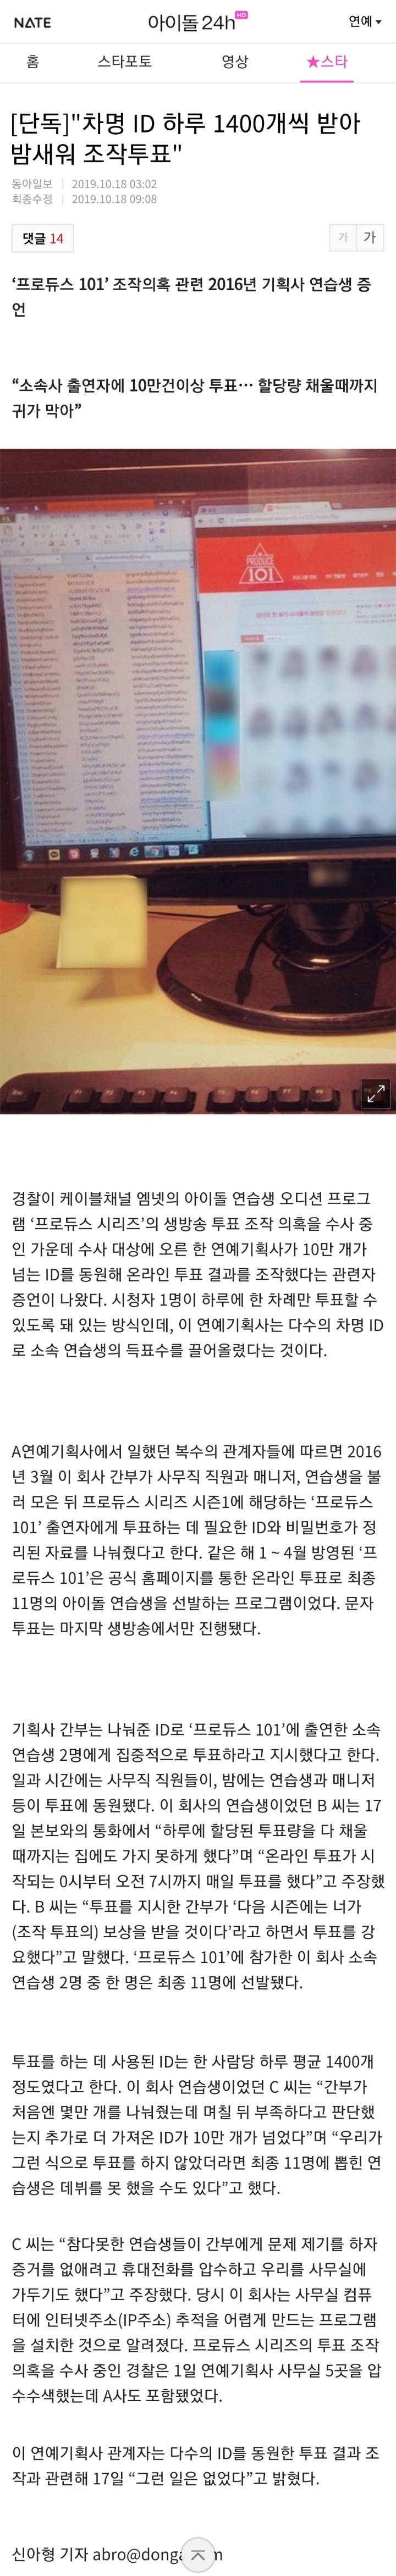 아이오아이 최종멤버 1명 조작투표 의혹